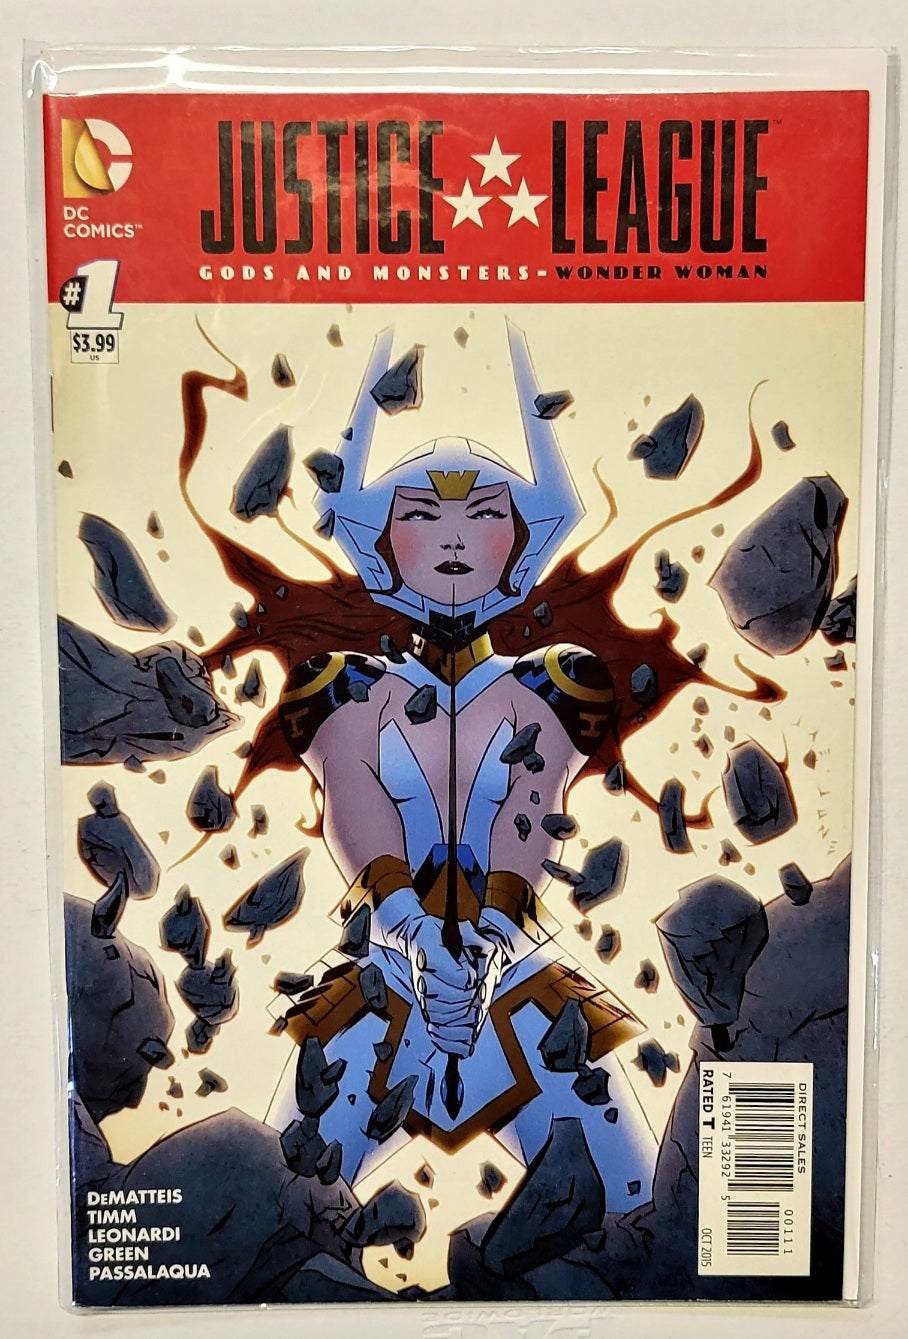 Justice League #1 GODS & MONSTERS Wonder Woman